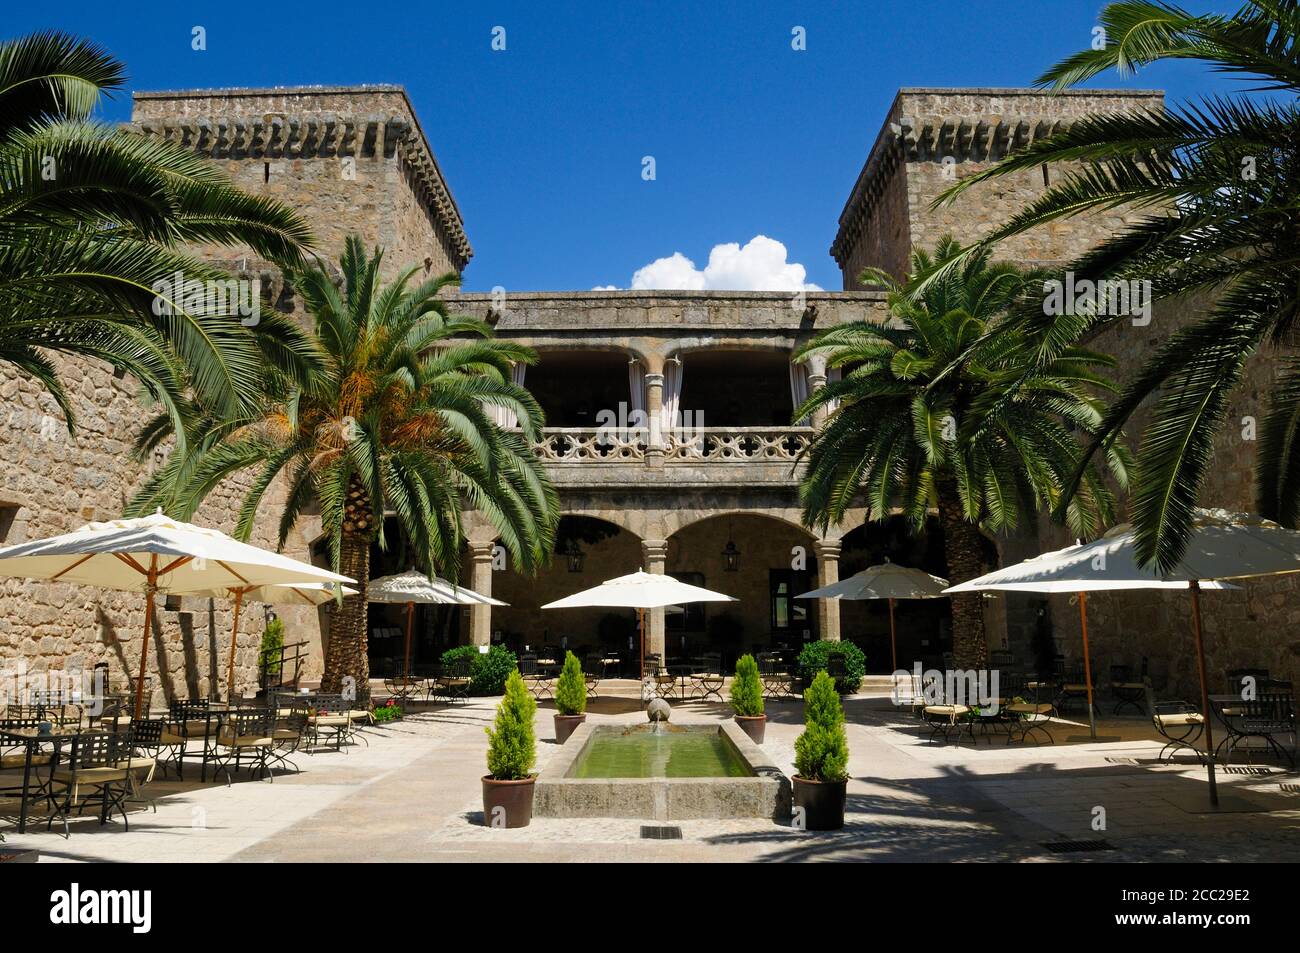 Europe, Spain, Extremadura, Sierra de Gredos, Jarandilla de la Vera, View of parador hotel Stock Photo